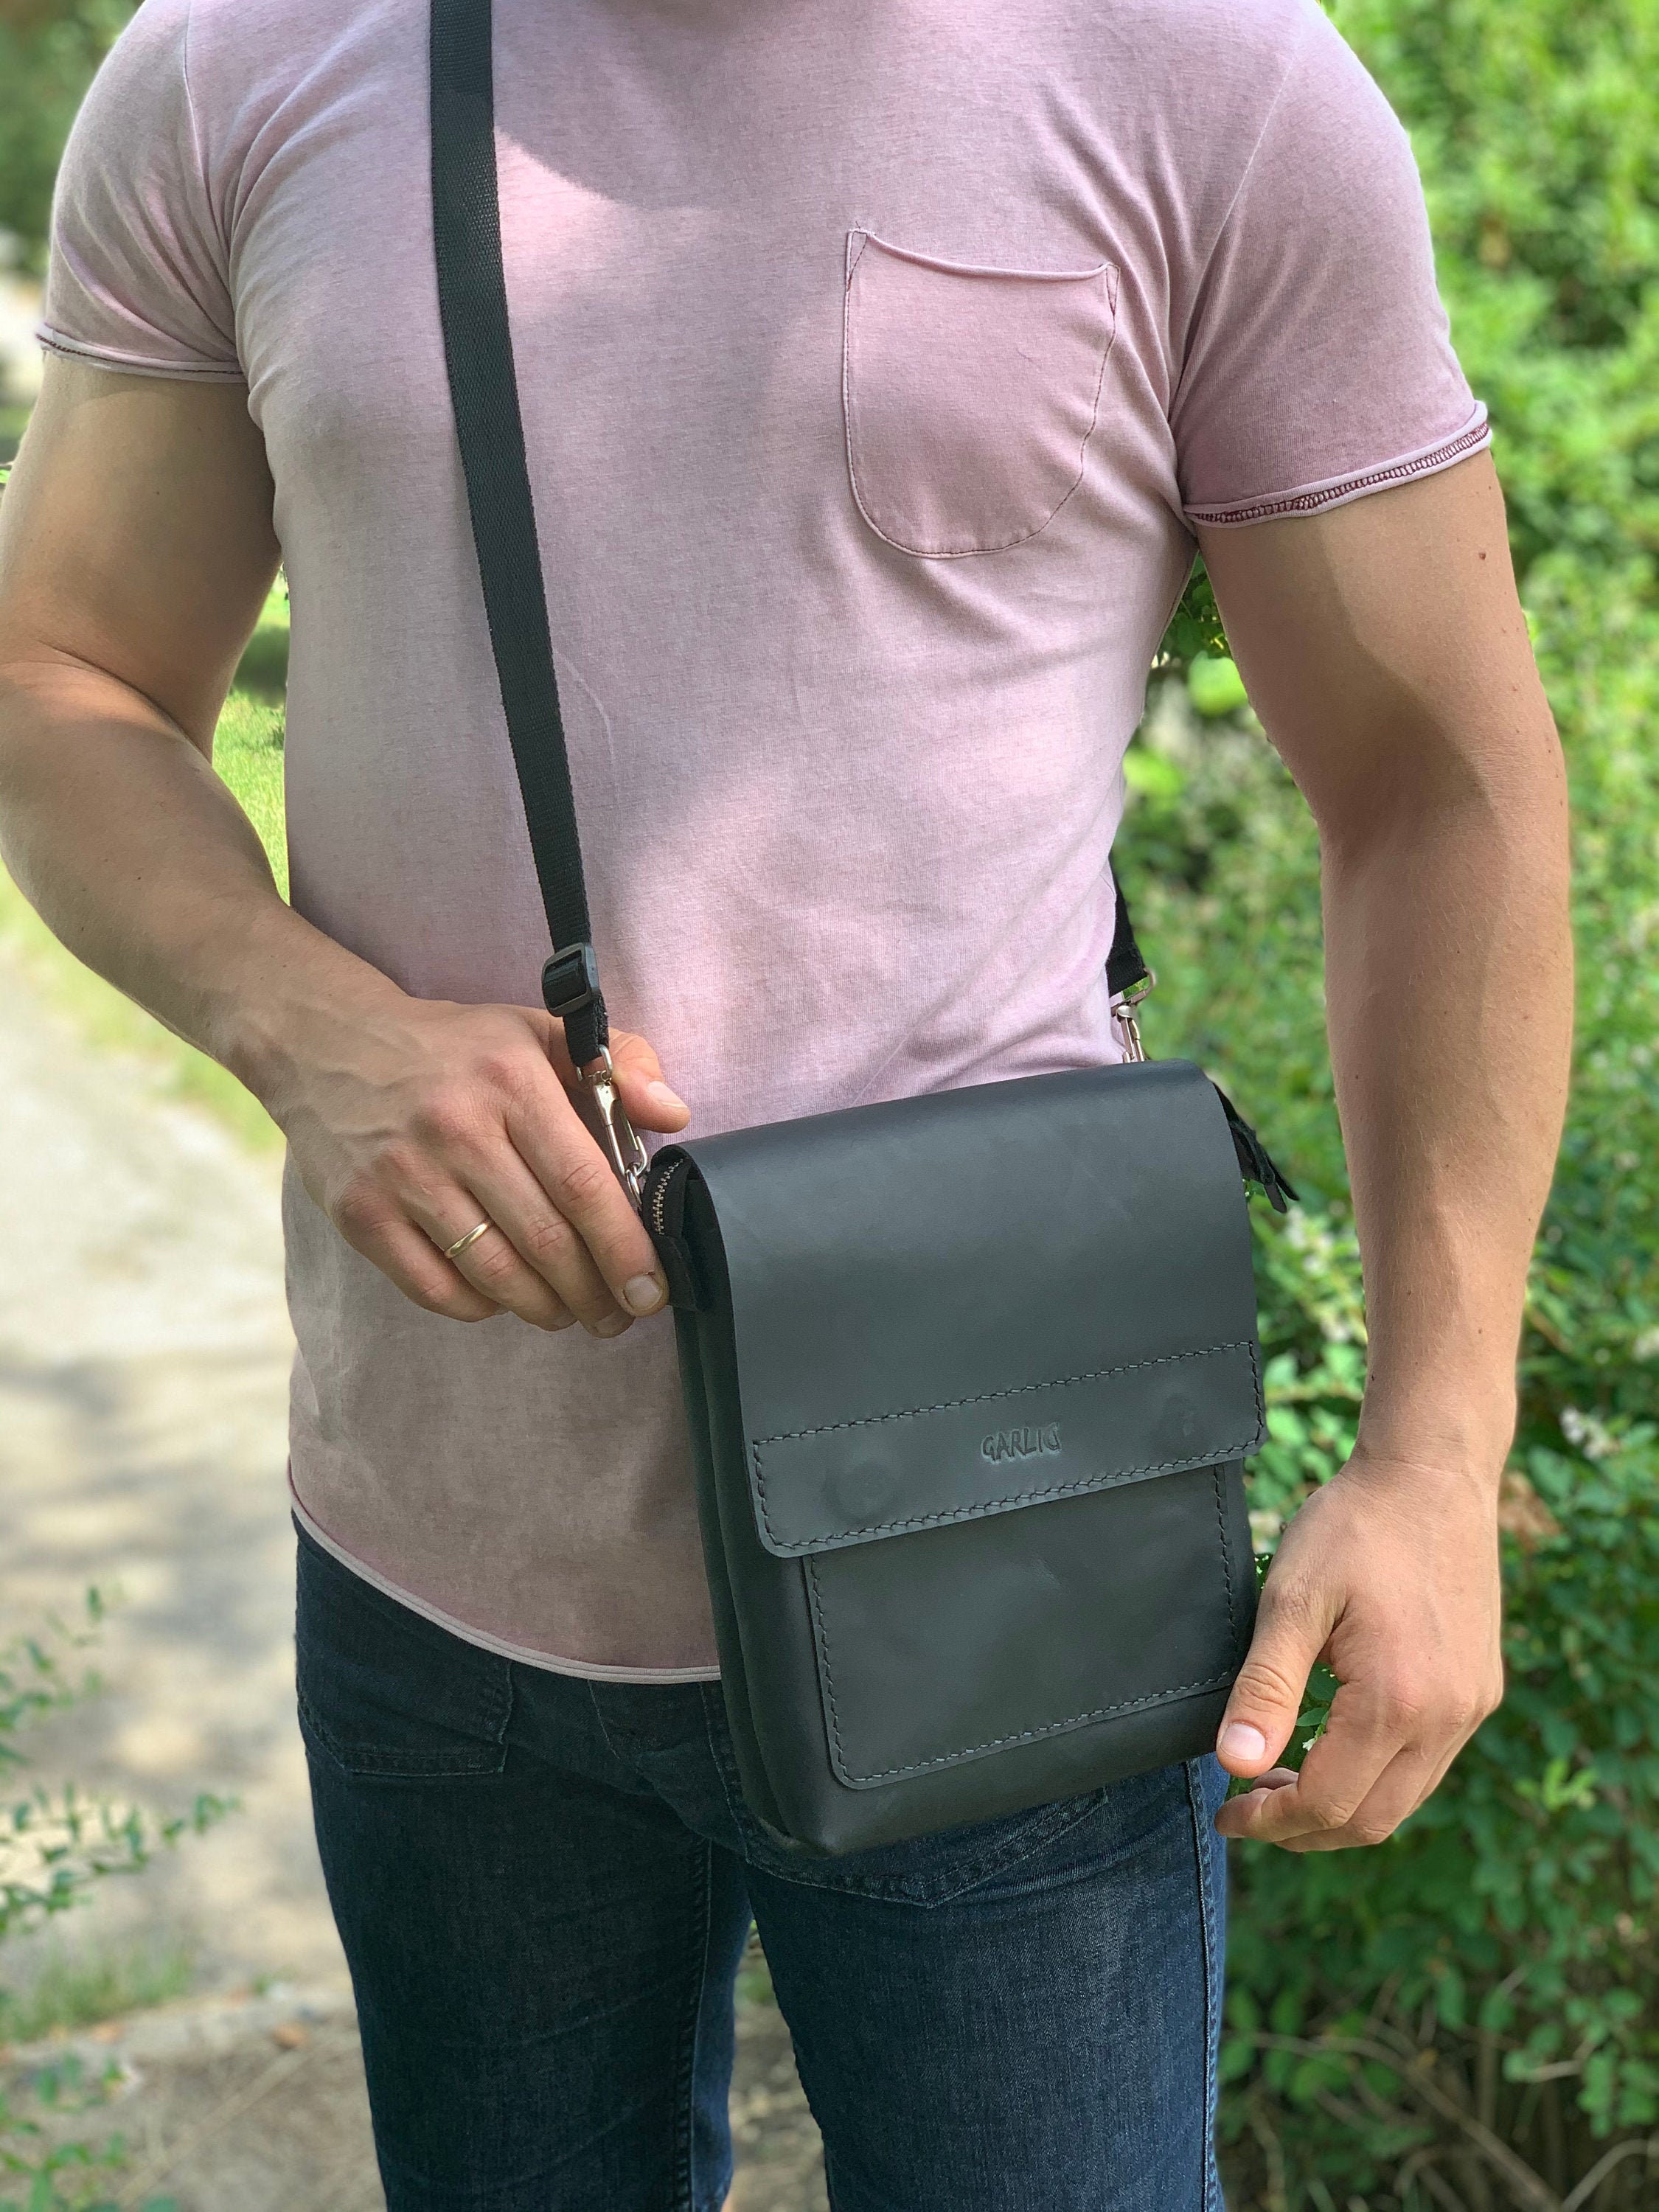 Black Leather Bag for Men Men's Crossbody Bag Shoulder | Etsy